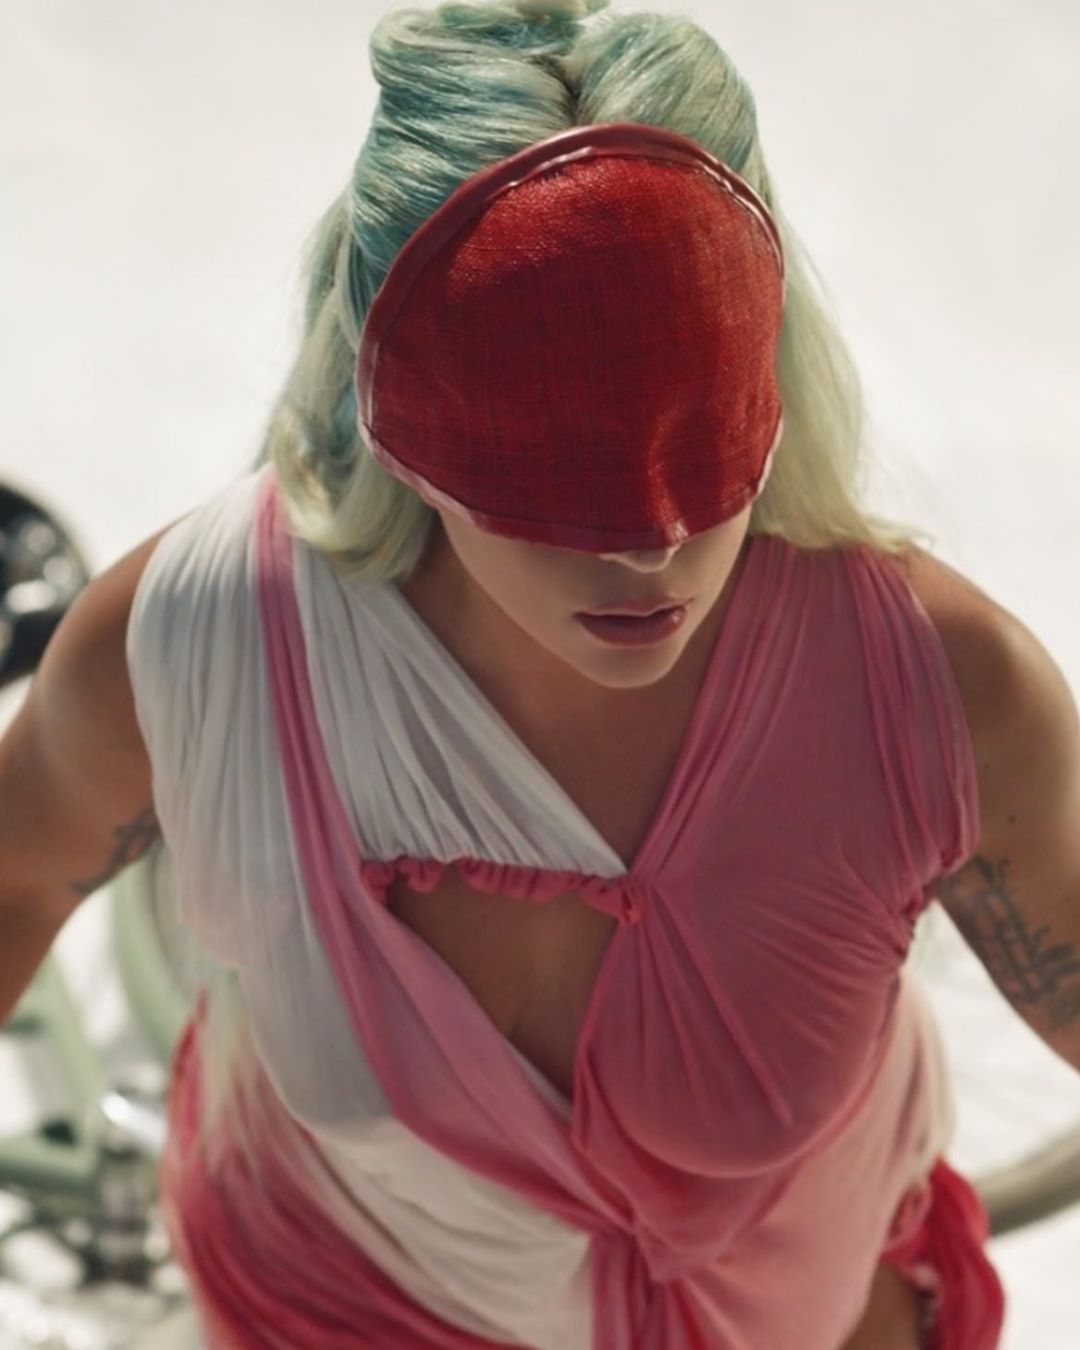 Lady Gaga entrega o clipe de "911": assista!